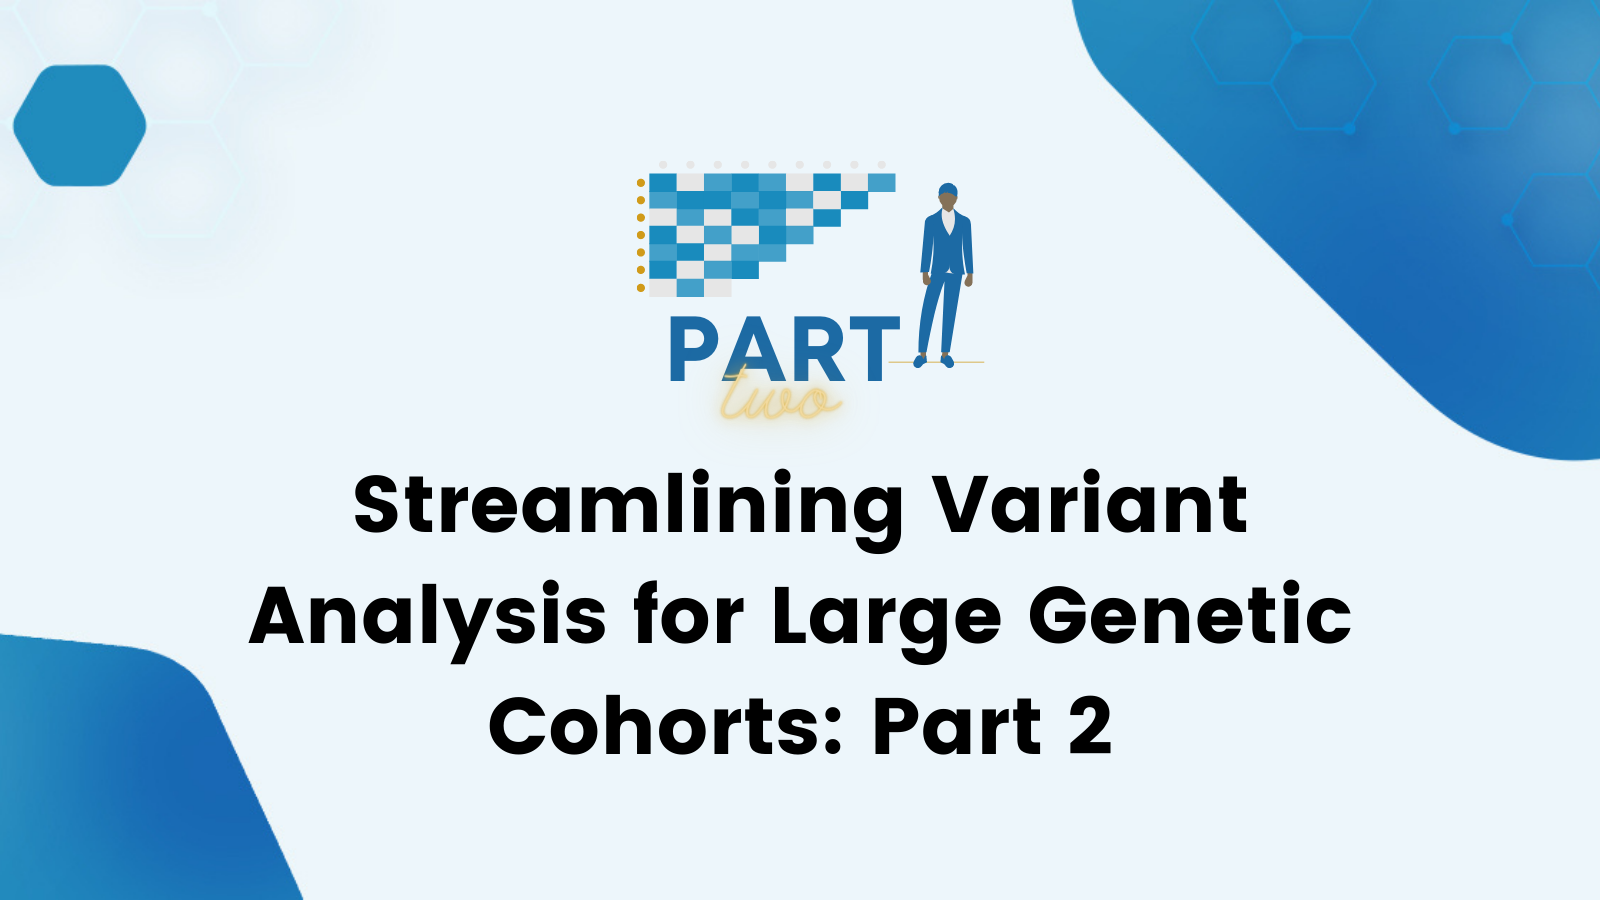 Streamlining Variant Analysis for Large Genetic Cohorts: Part 2